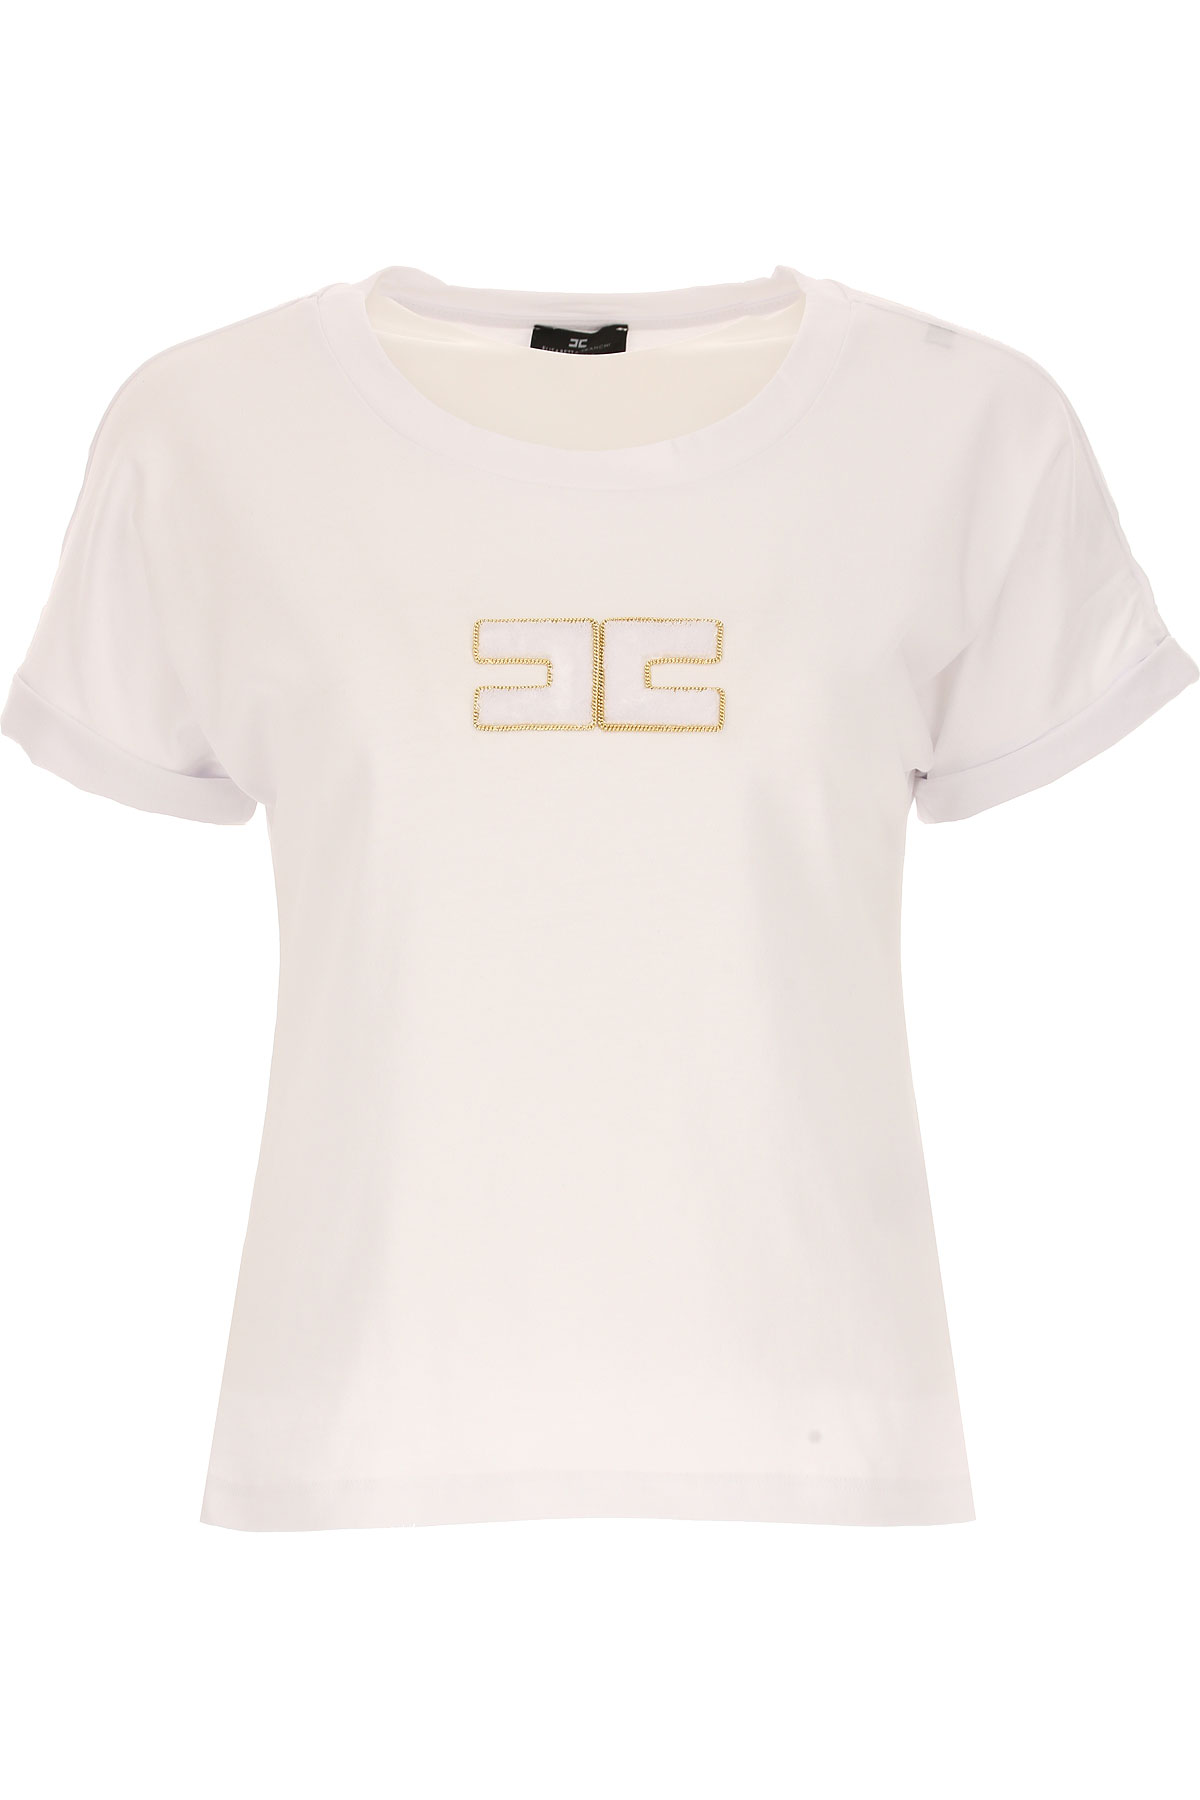 Elisabetta Franchi T-shirt Femme, Blanc, Coton, 2017, 38 40 42 44 46